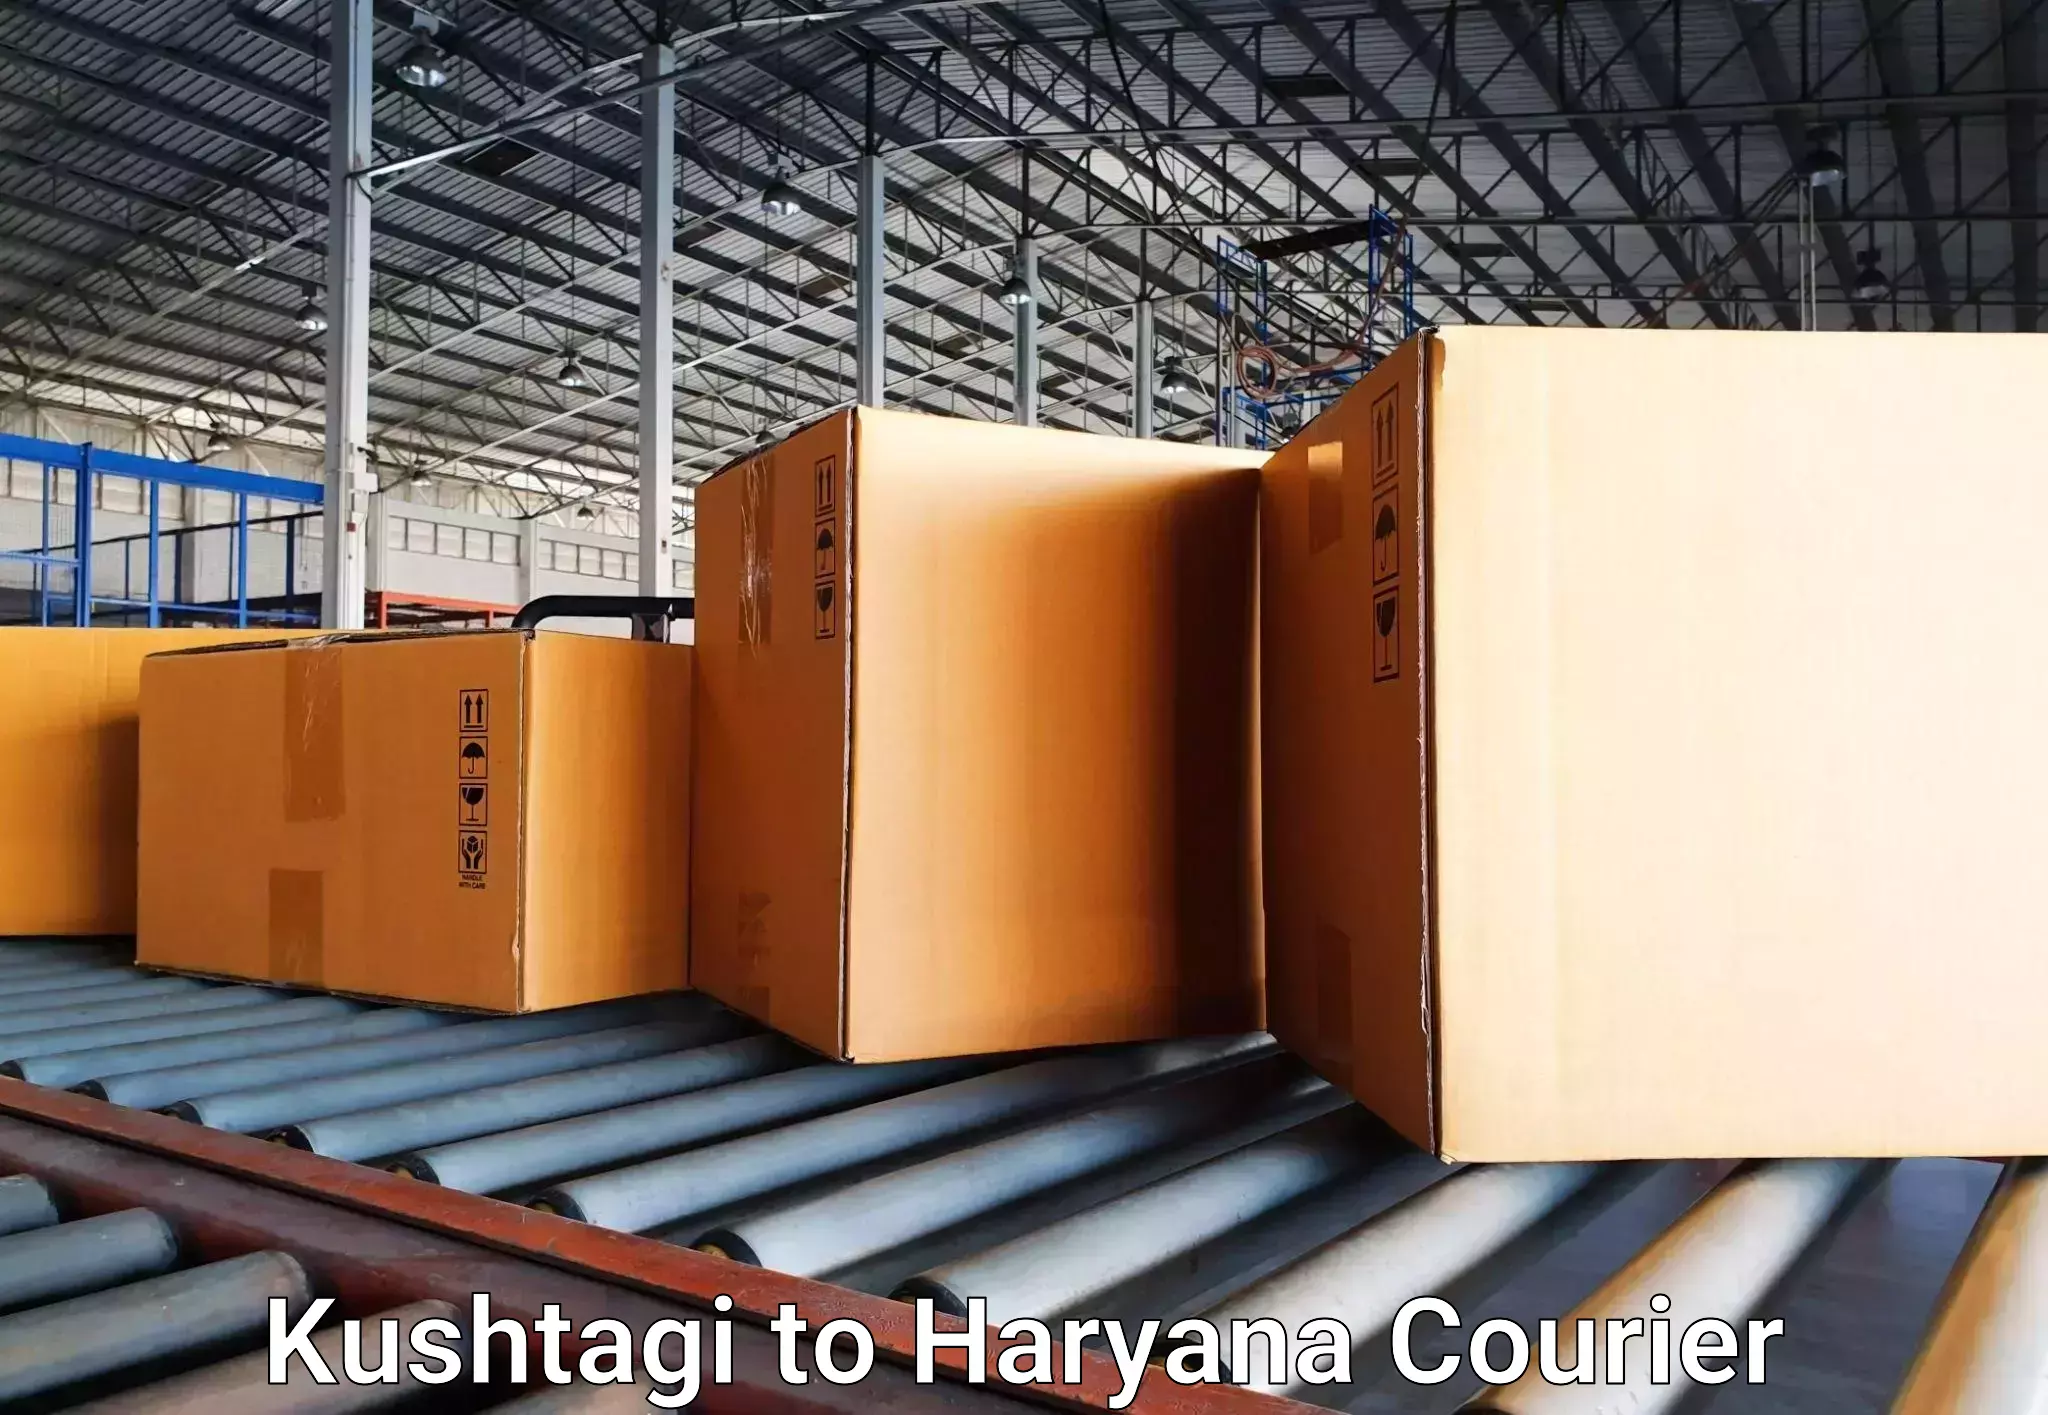 Baggage transport management Kushtagi to Hansi